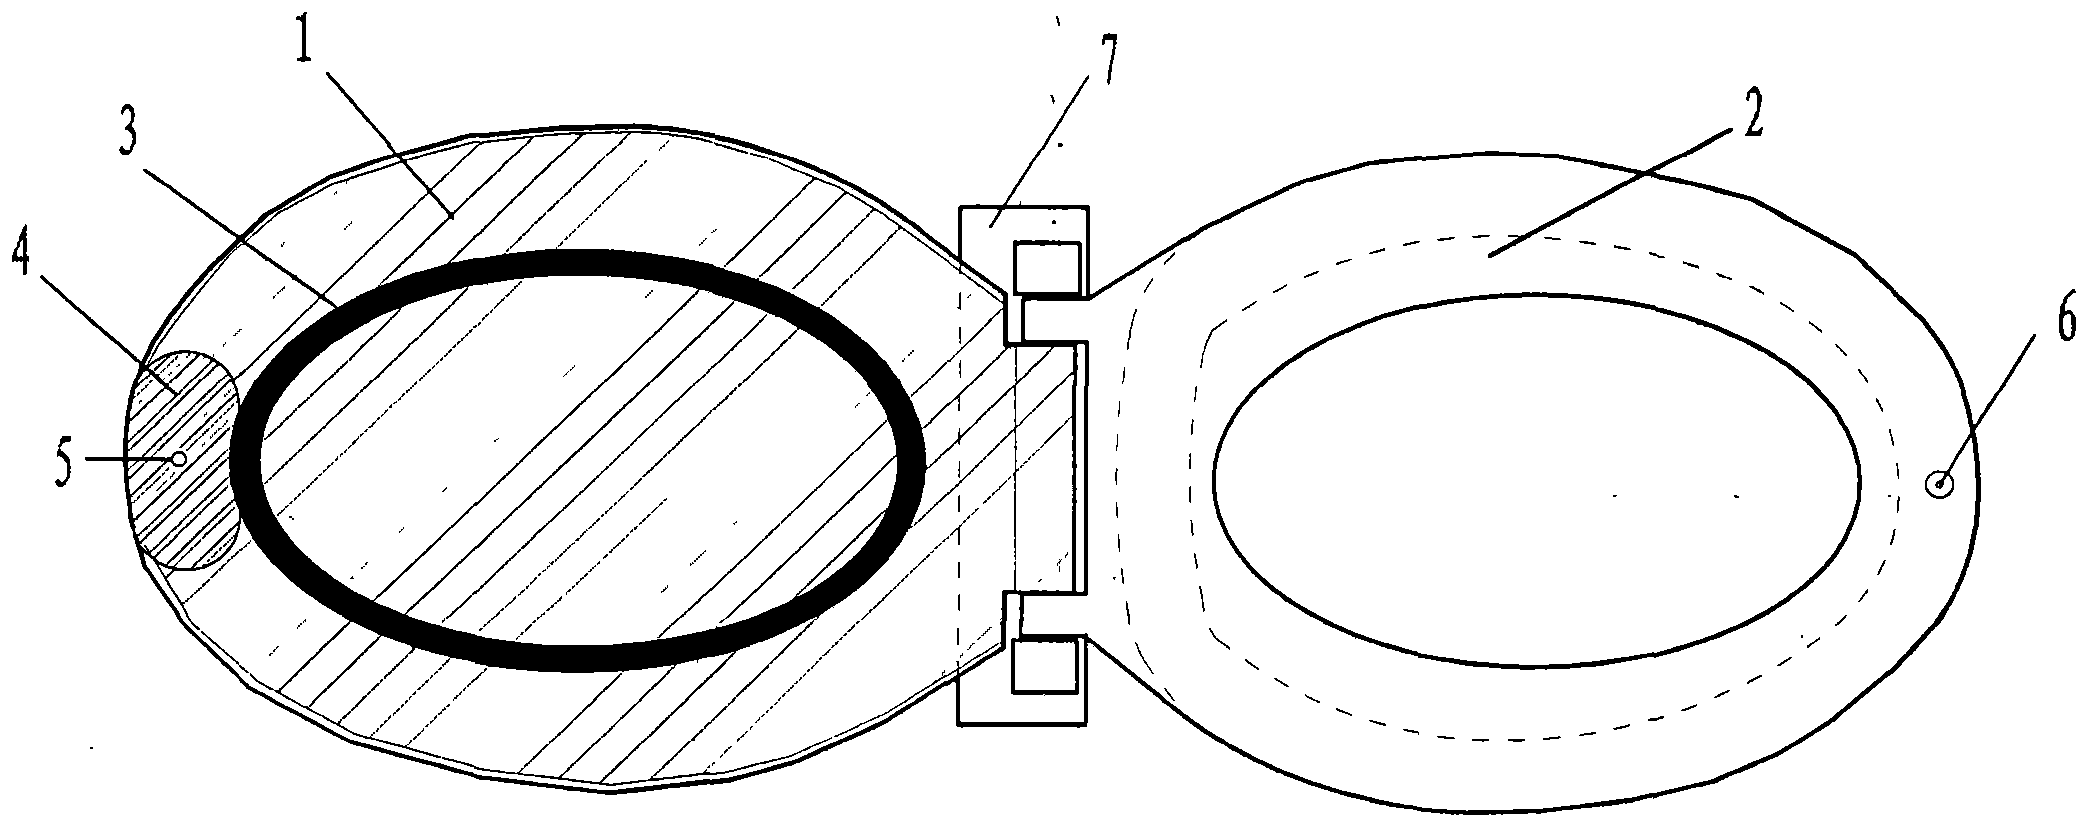 Full-closed closestool lid